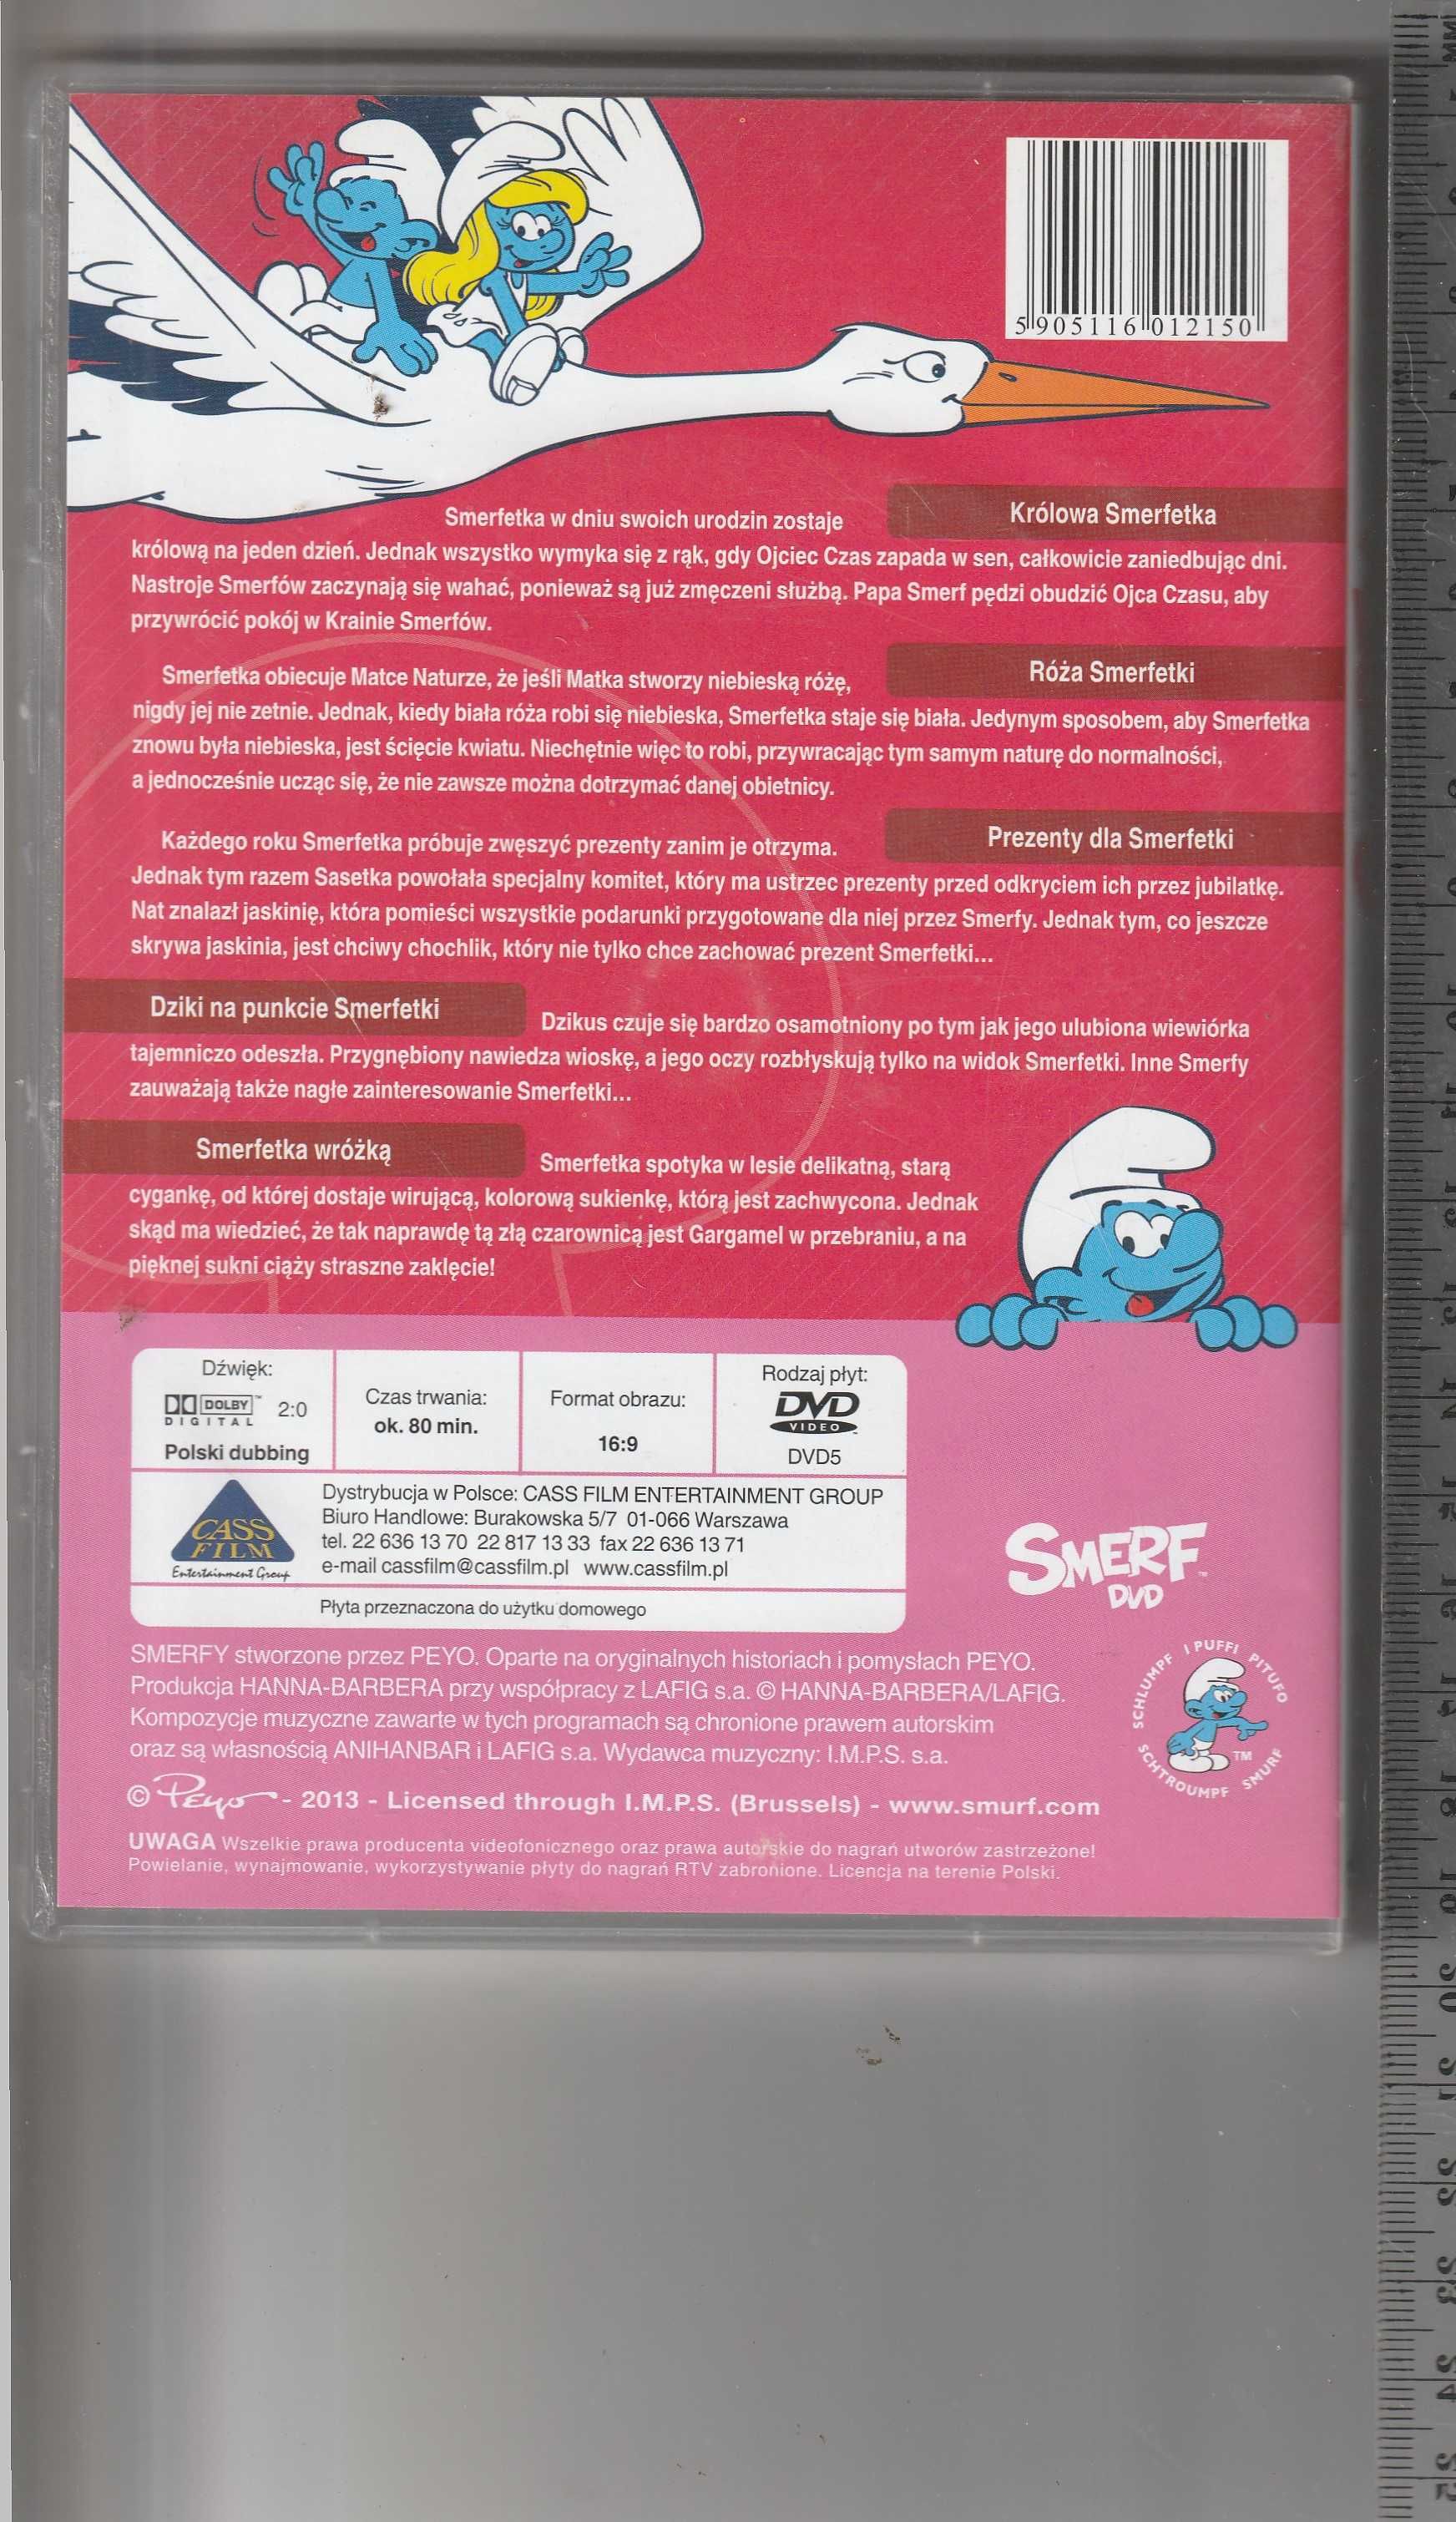 Smerfy - Smerfetka DVD